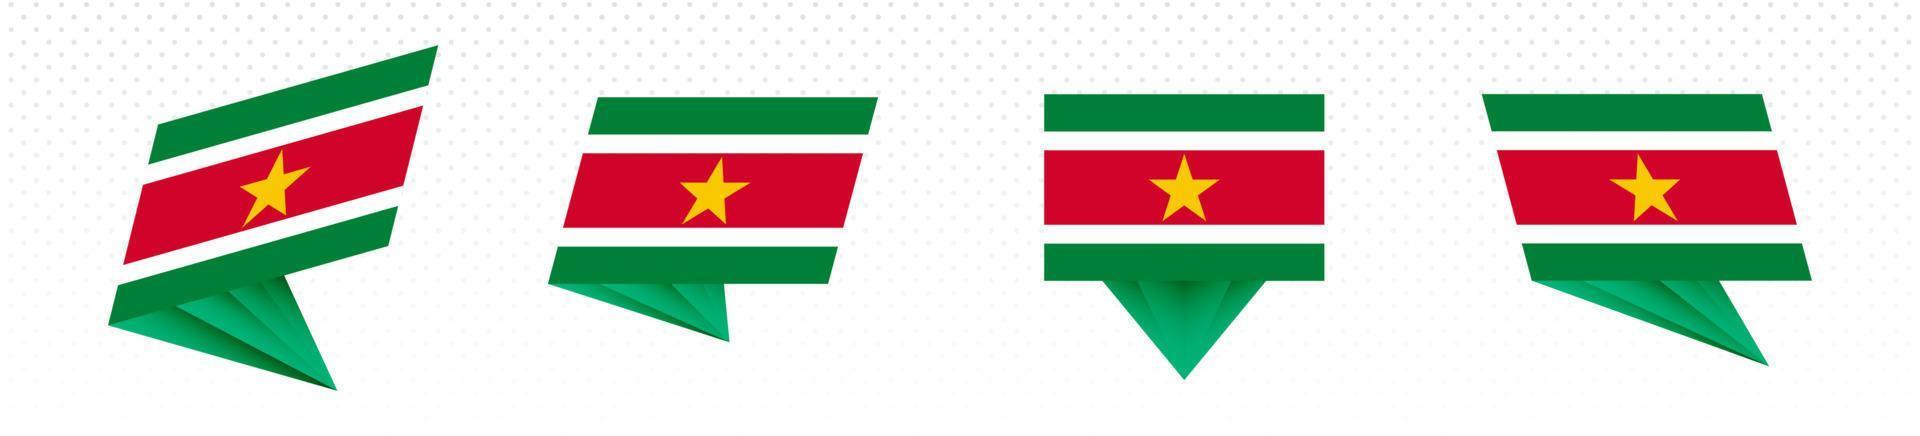 Flagge von Surinam im modernen abstrakten Design, Flaggensatz. vektor